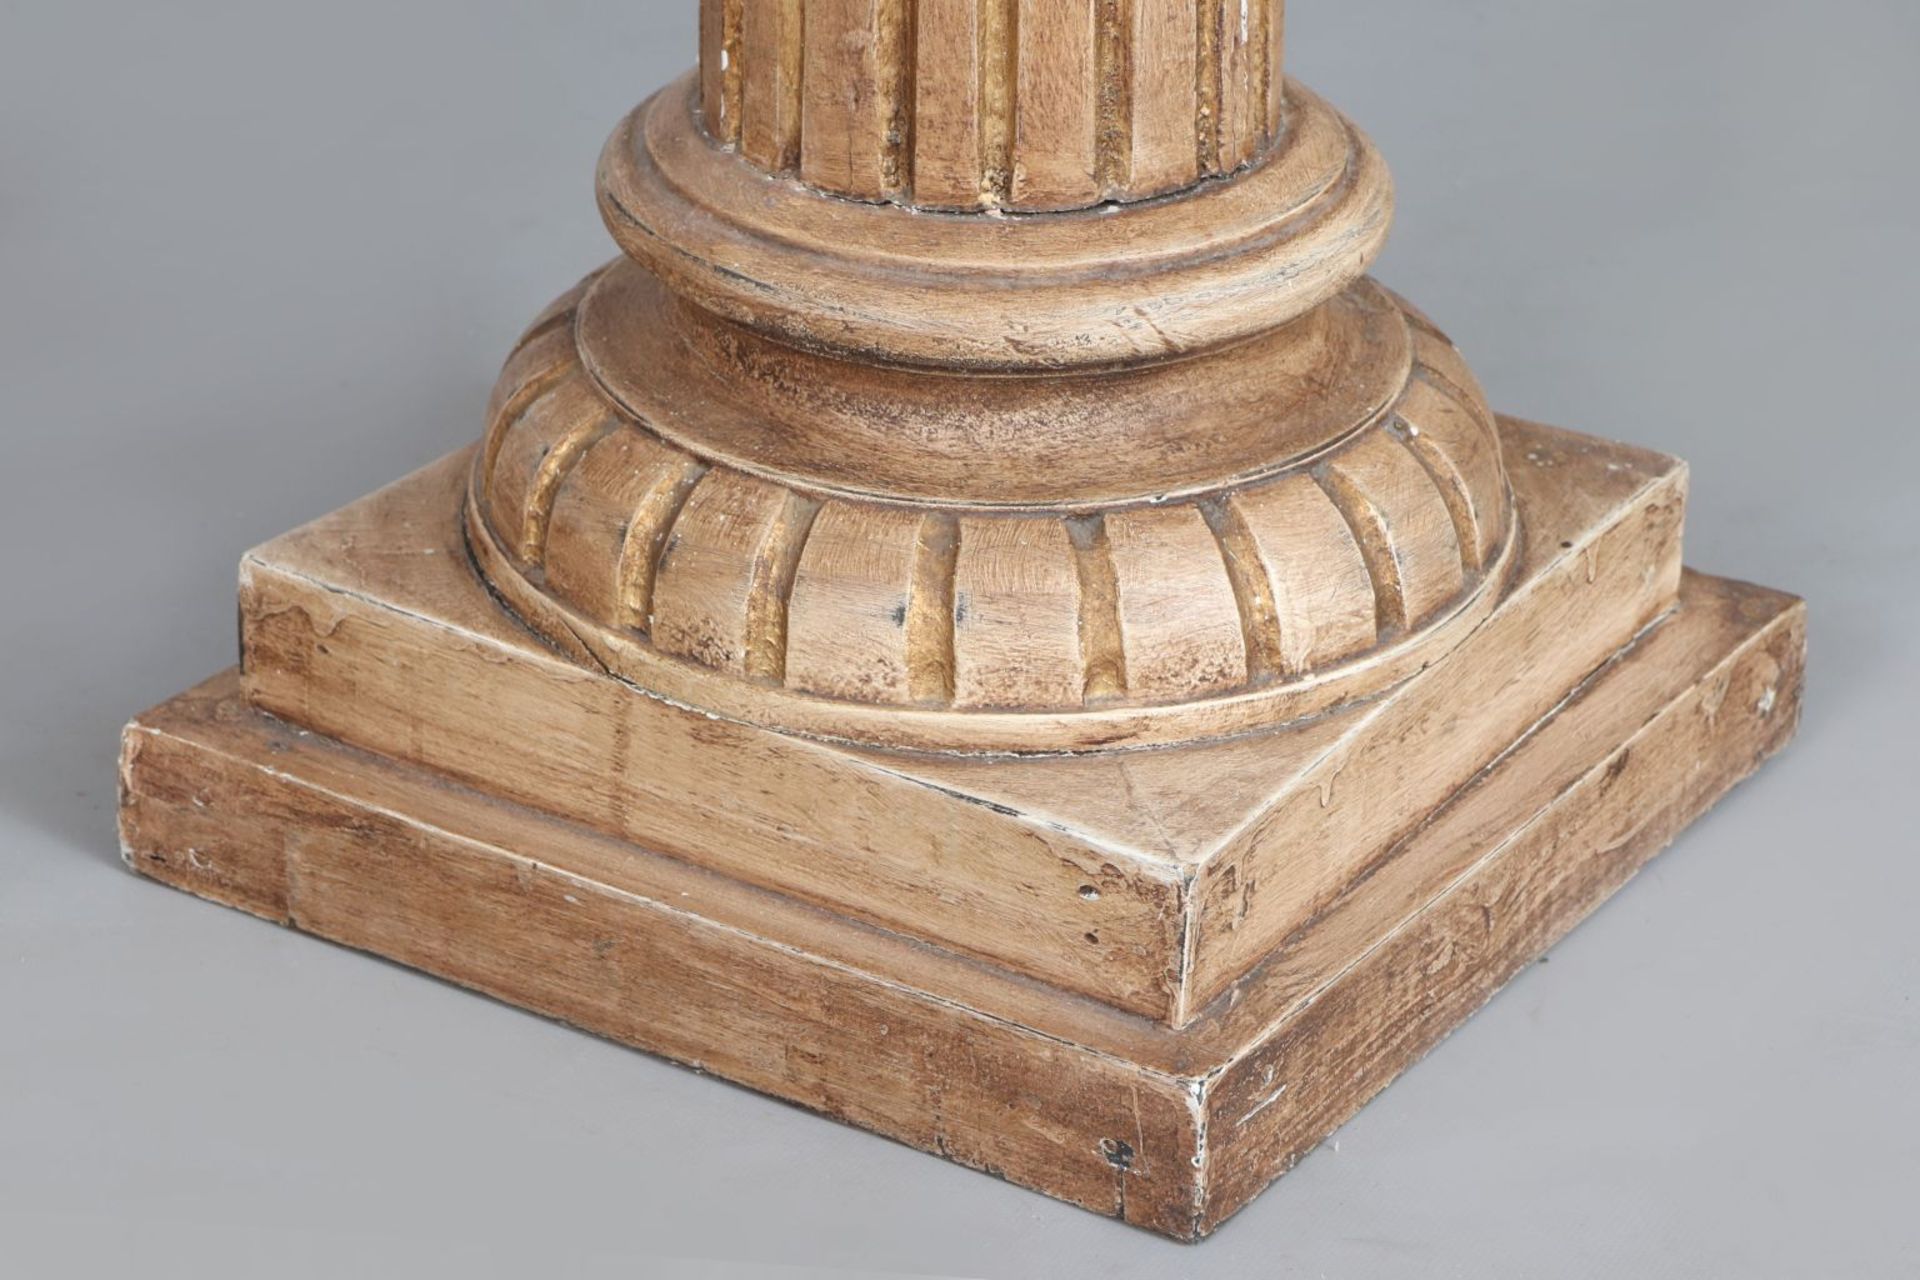 Paar Säulen/Piedestale im korinthischen StilHolz, geschnitzt und hell (beige-gold) gefasst, ka - Image 4 of 4